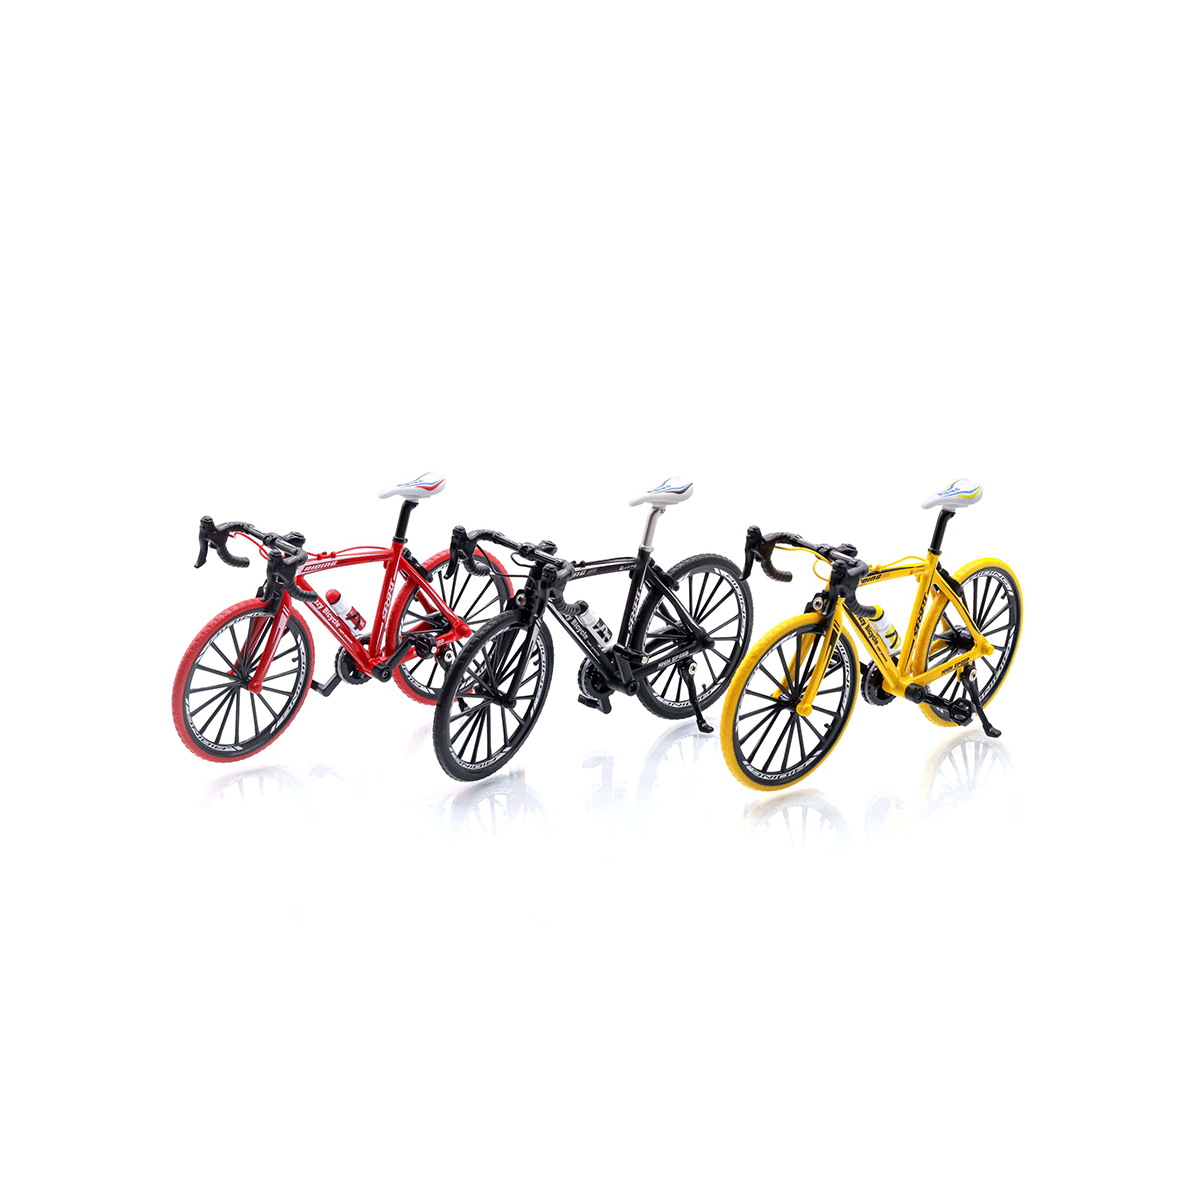  دوچرخه فلزی ماکت 